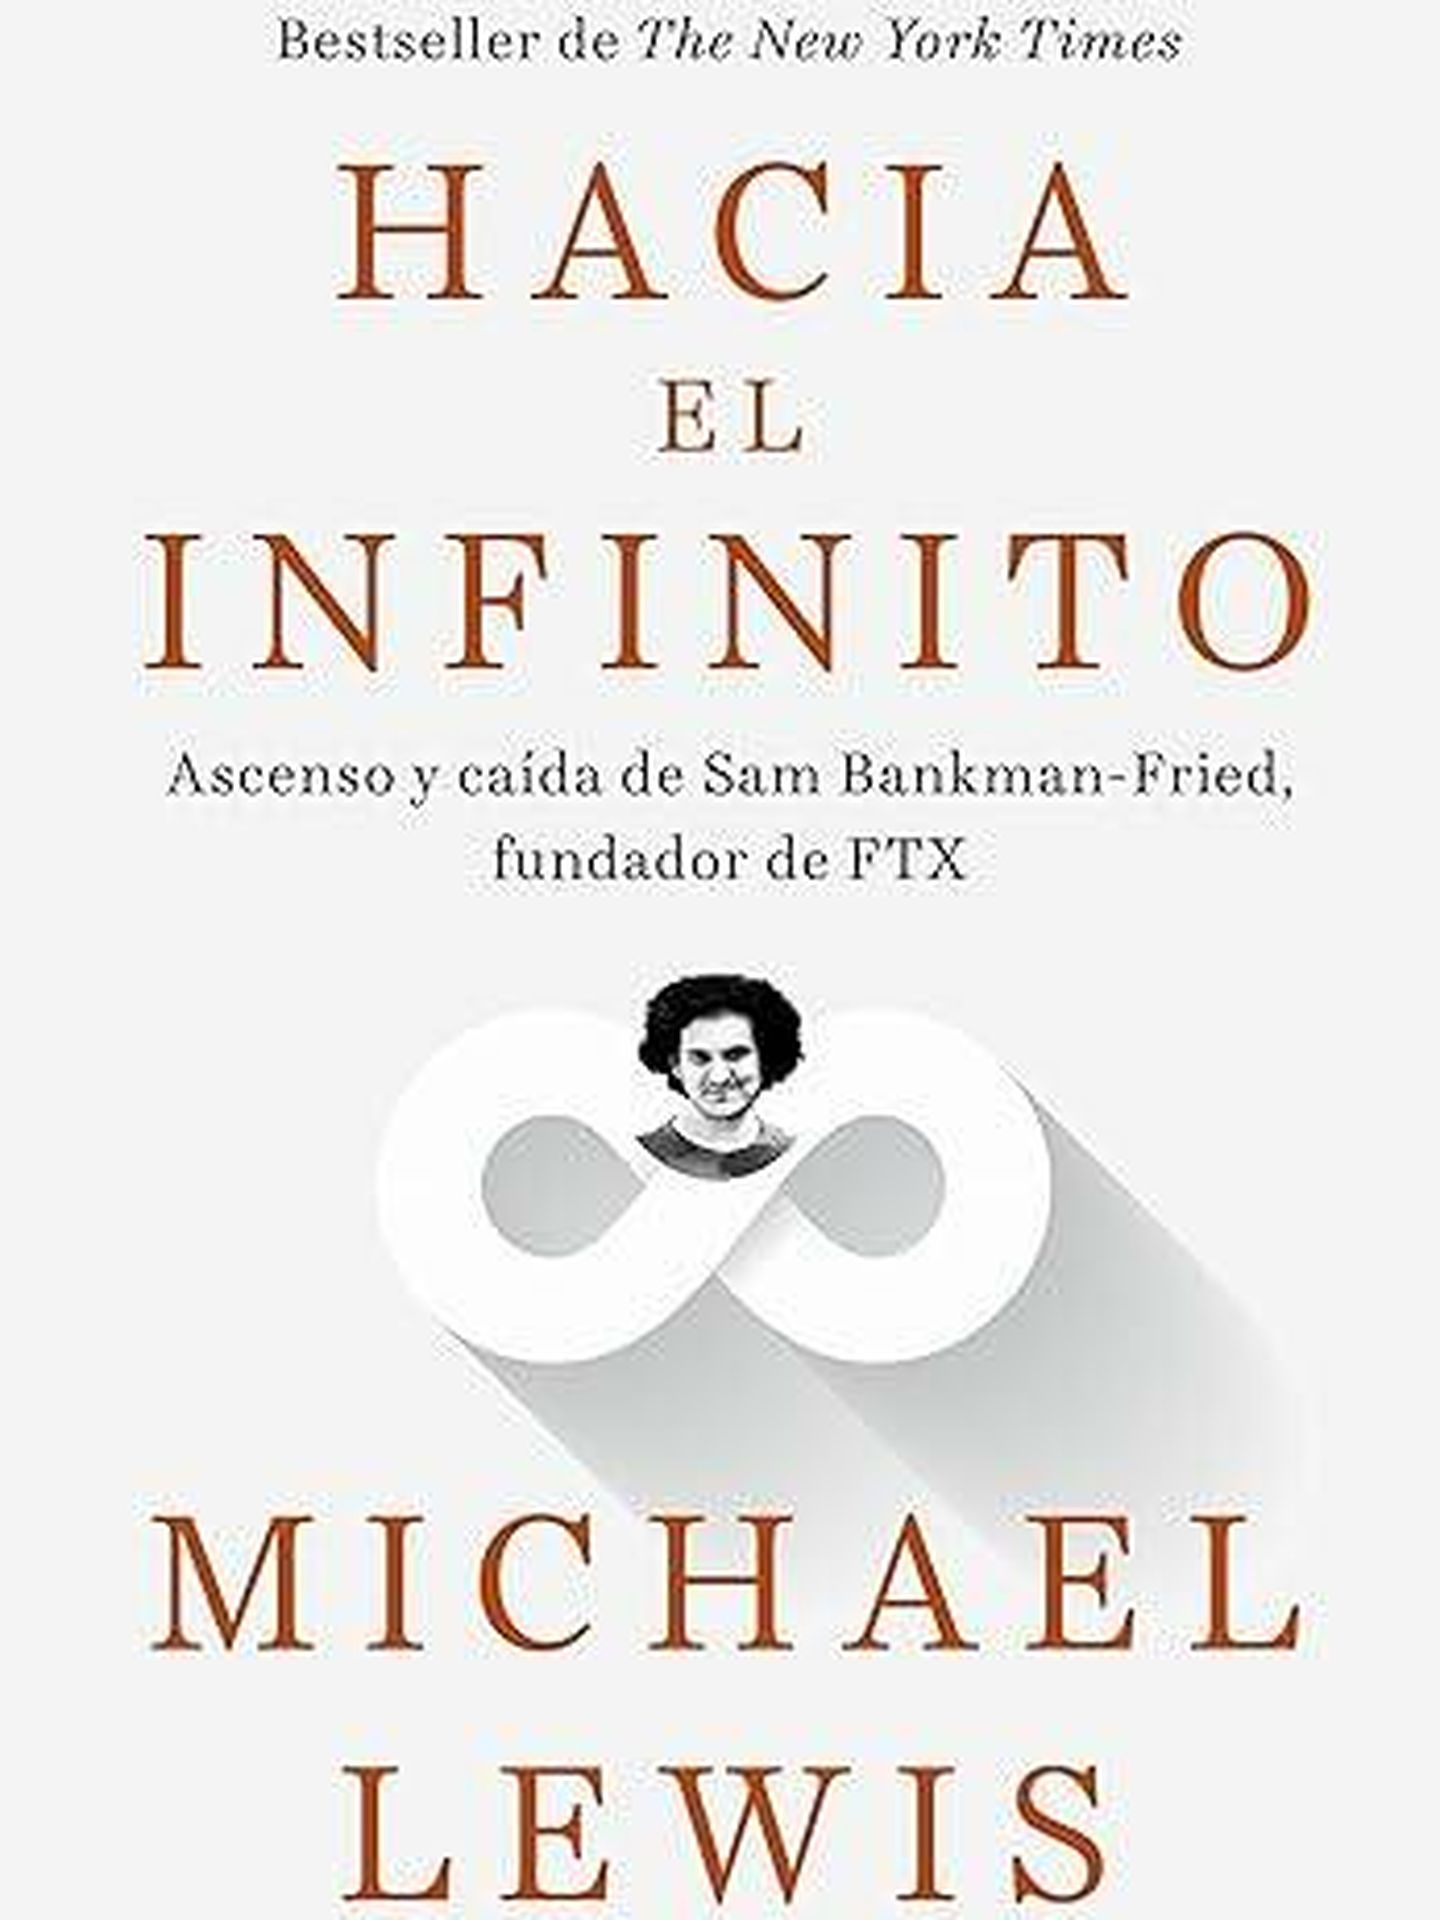 Portada de 'Hacia el infinito', el libro de Michael Lewis sobre el ascenso y caída de Sam Bankman-Fried.